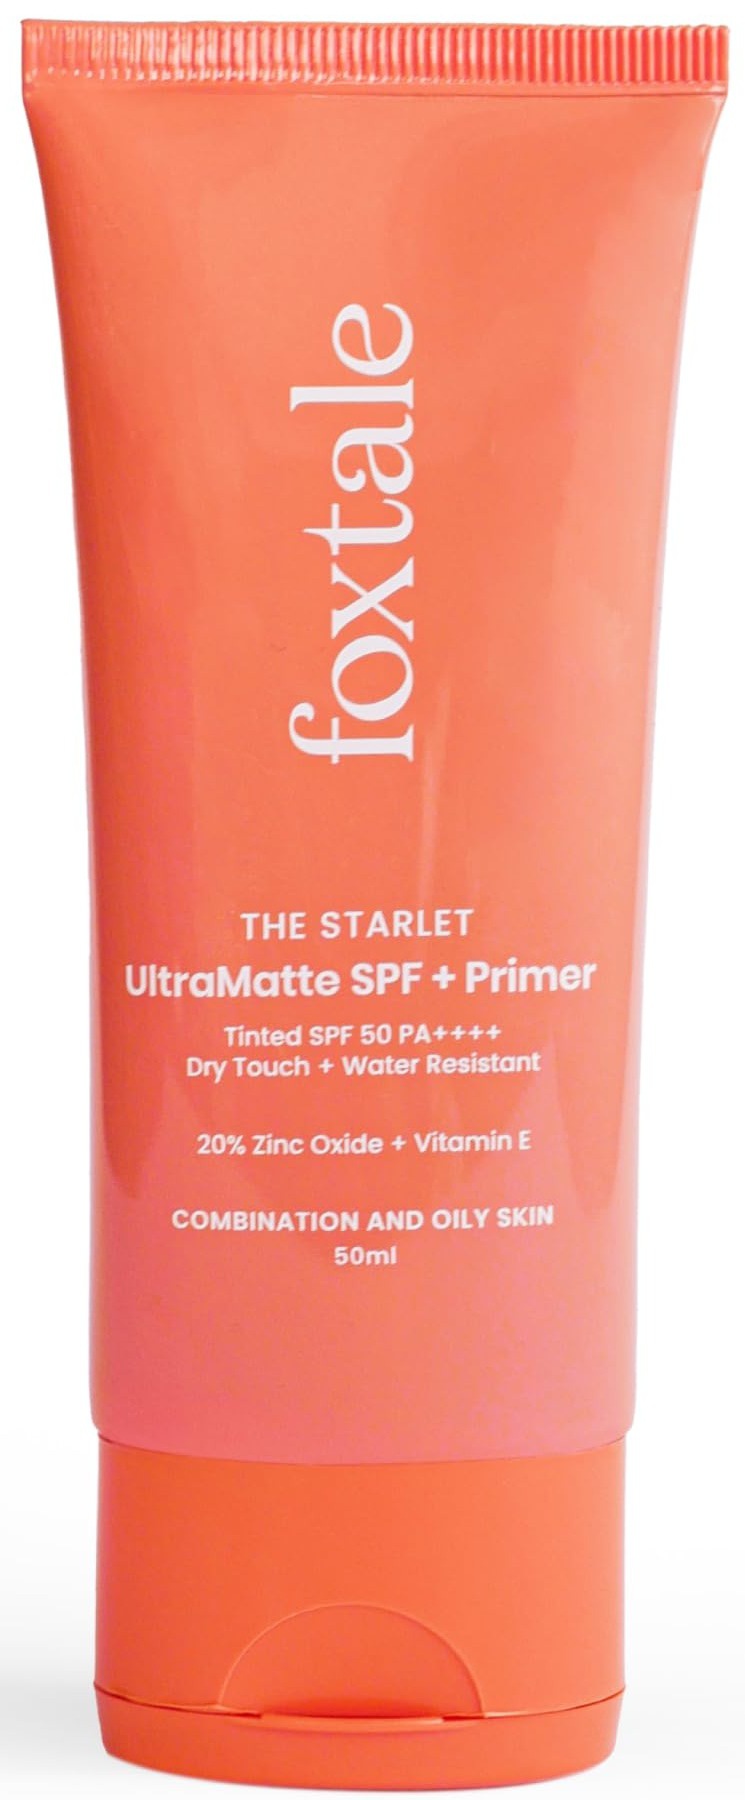 Foxtale Ultramatte SPF 50 + Primer